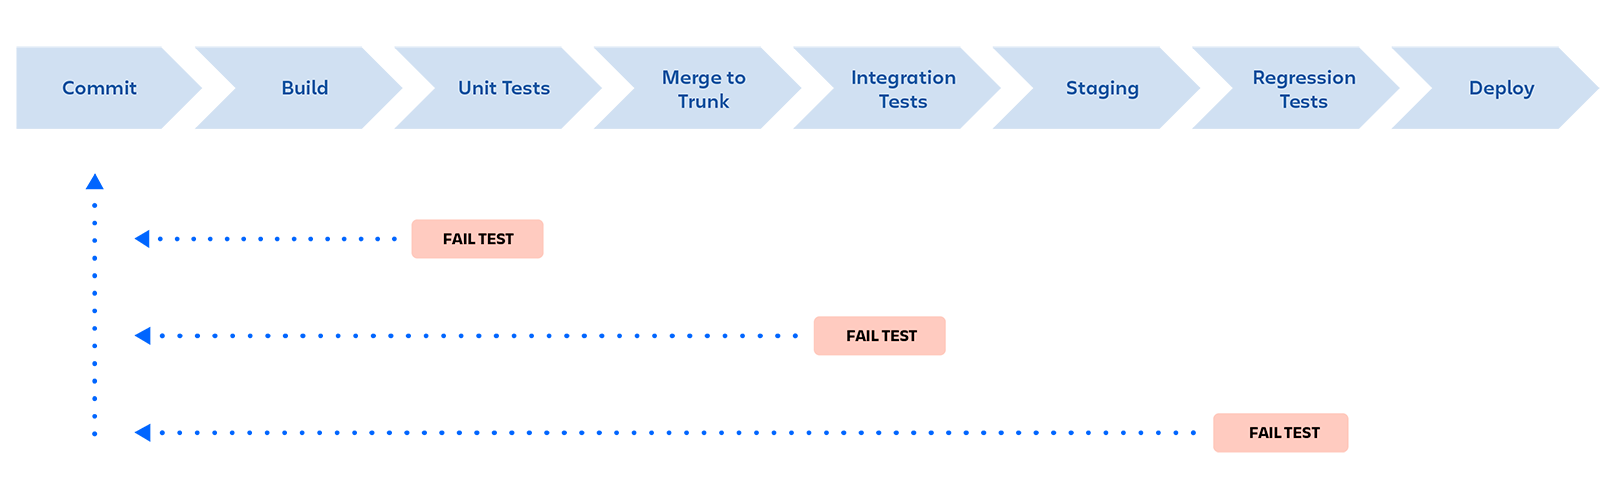 Pipeline DevOps: commit, build, test unitari, merge a trunk, test di integrazione, staging, test di regressione, distribuzione. La pipeline viene interrotta se in una qualsiasi fase i test non vengono superati e lo sviluppatore riceve un feedback.